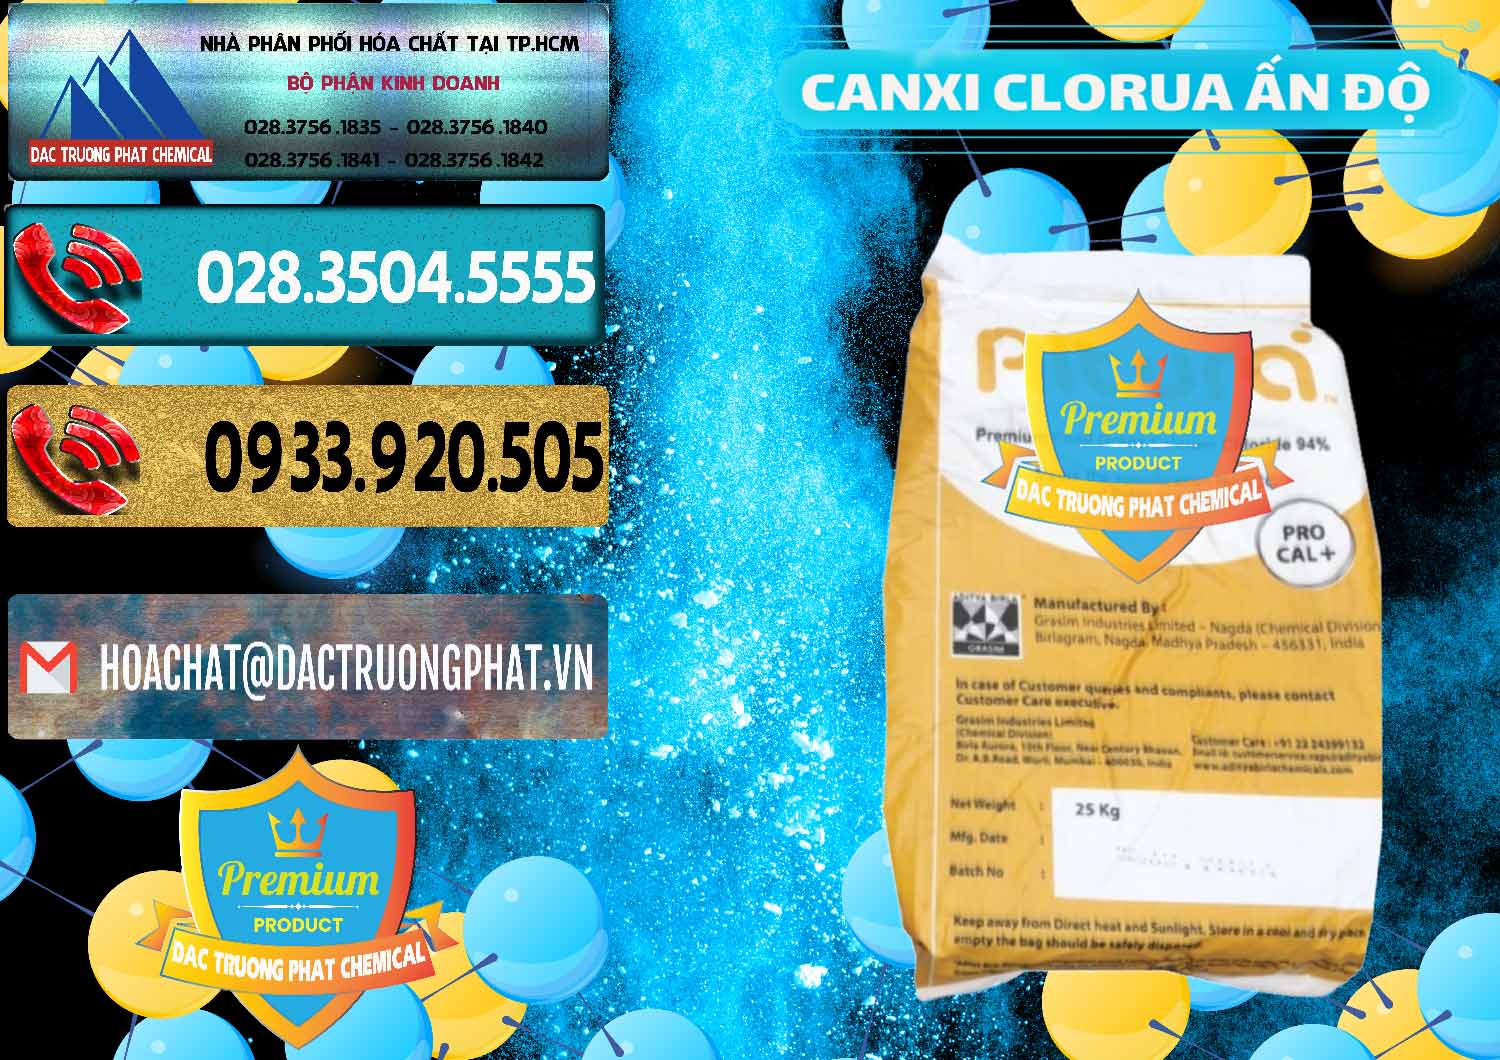 Nơi chuyên nhập khẩu _ bán CaCl2 – Canxi Clorua Food Grade Altura Aditya Birla Grasim Ấn Độ India - 0436 - Nơi chuyên phân phối và bán hóa chất tại TP.HCM - hoachatdetnhuom.com